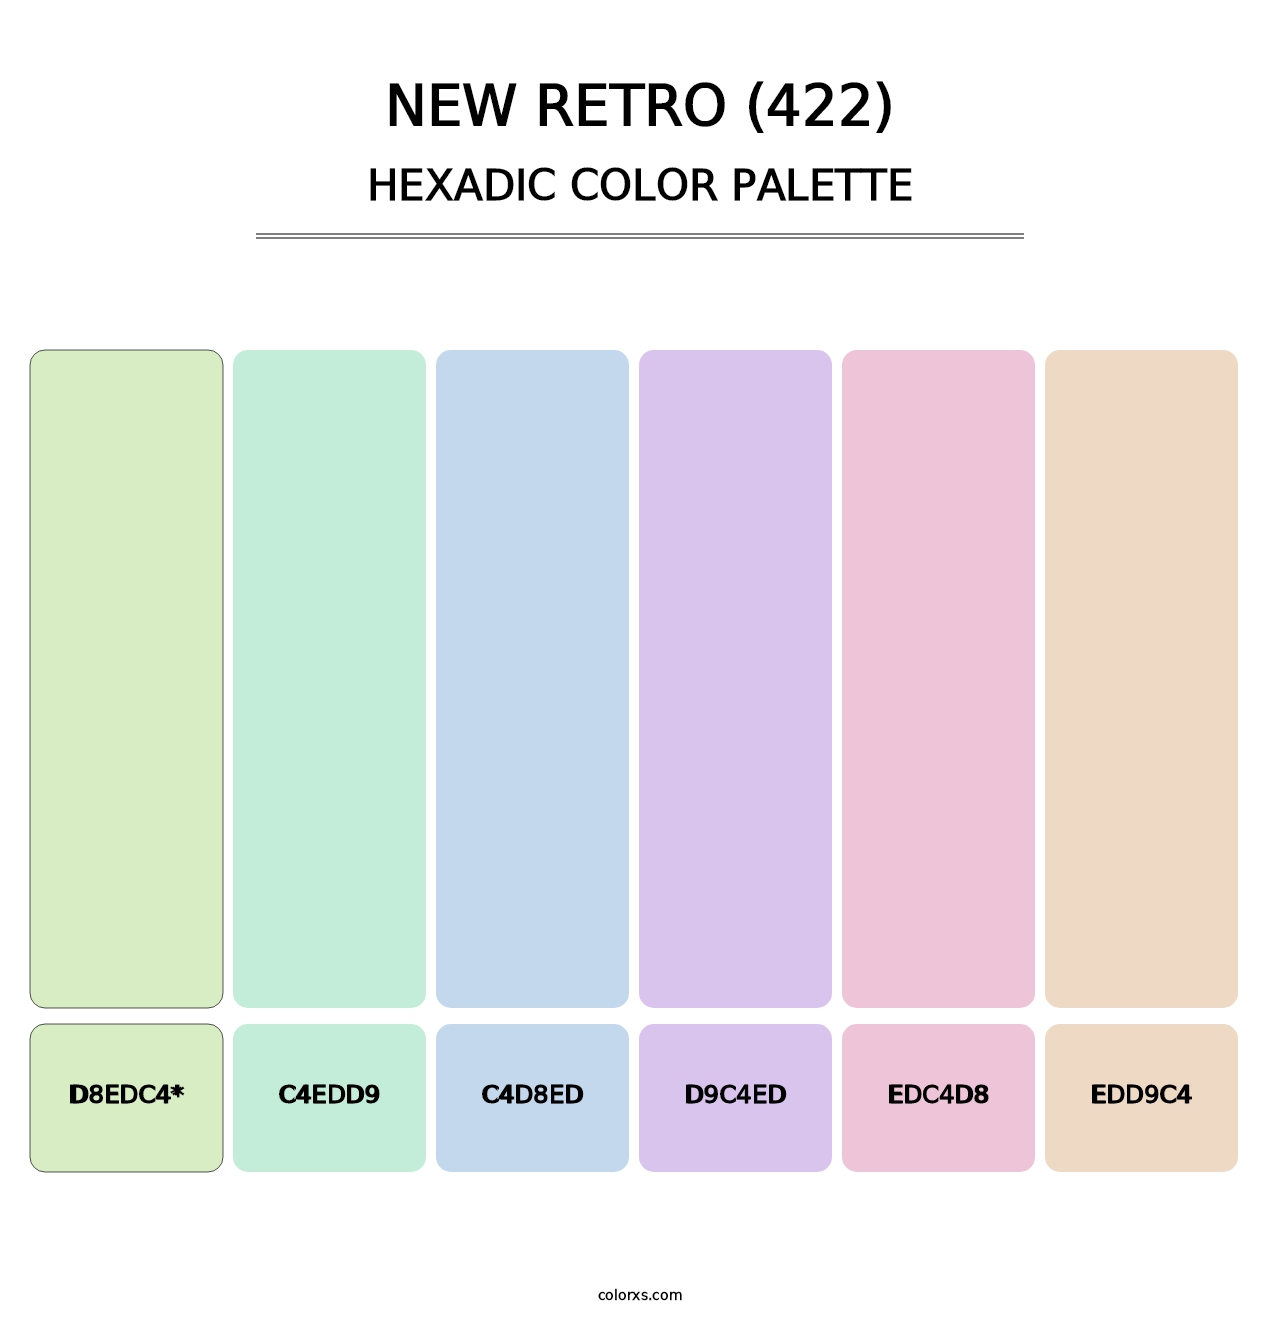 New Retro (422) - Hexadic Color Palette